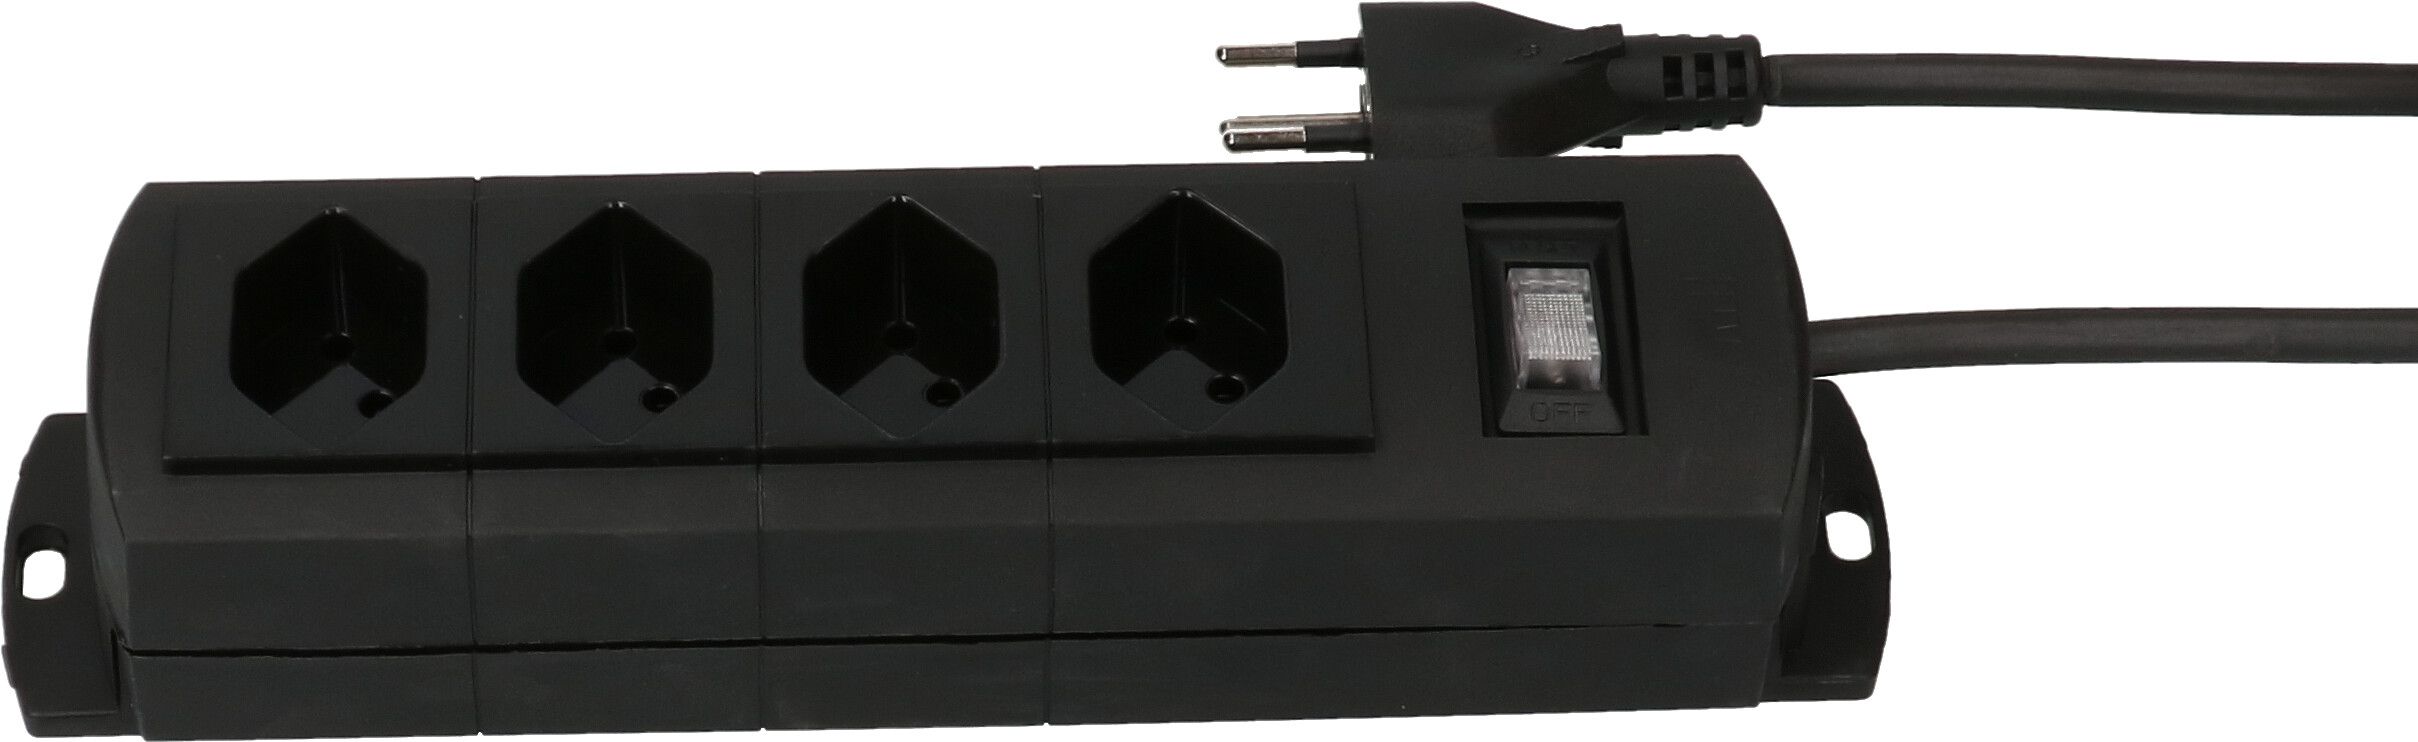 multiprise Prime Line 4x type 13 noir interrupteur 5m